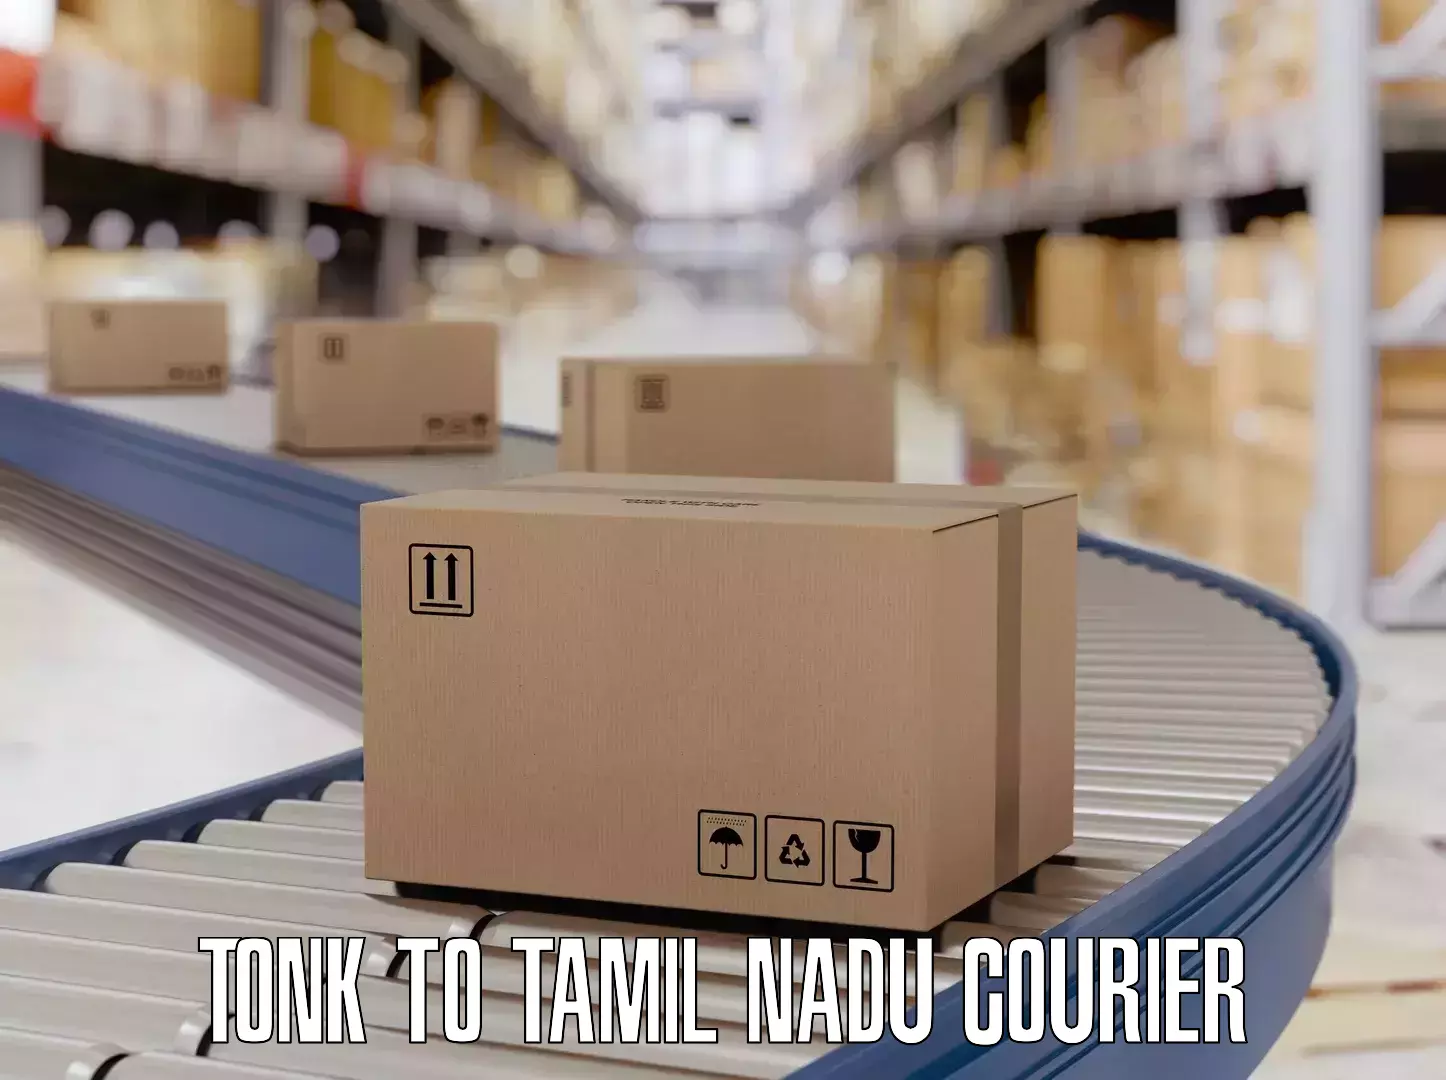 Luggage transit service in Tonk to Tamil Nadu